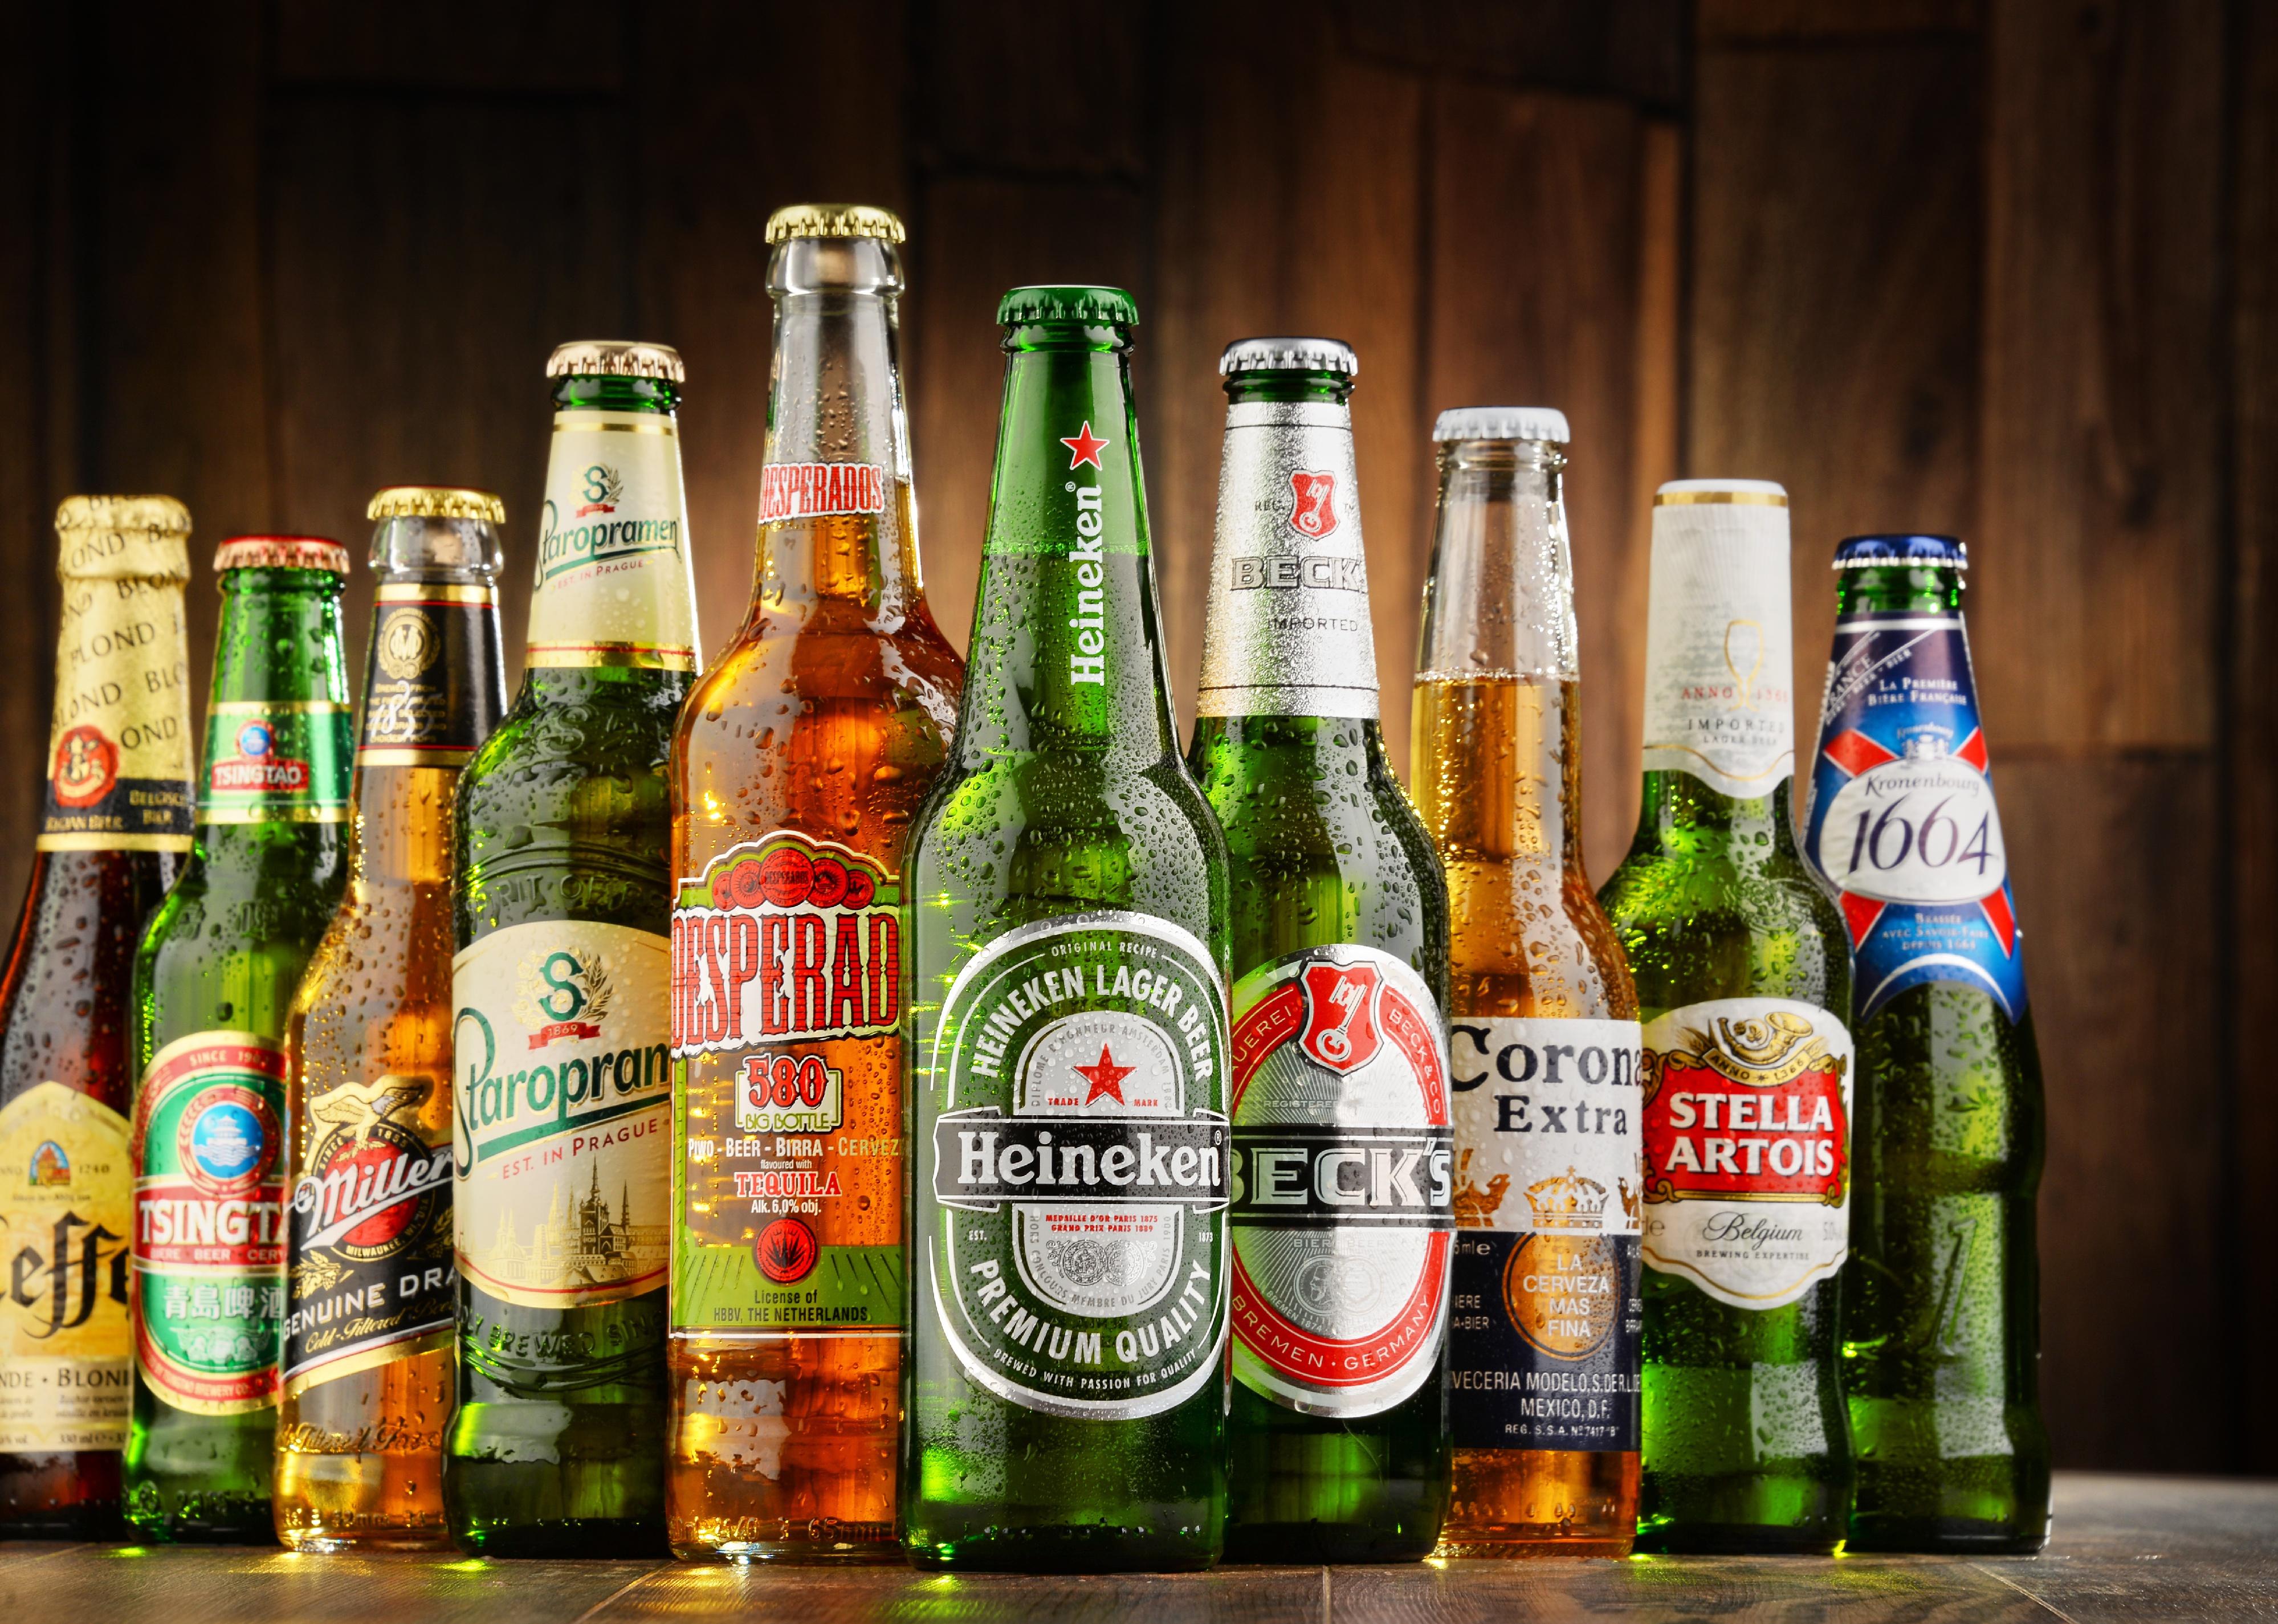 Multiple brands of beer bottles lined up